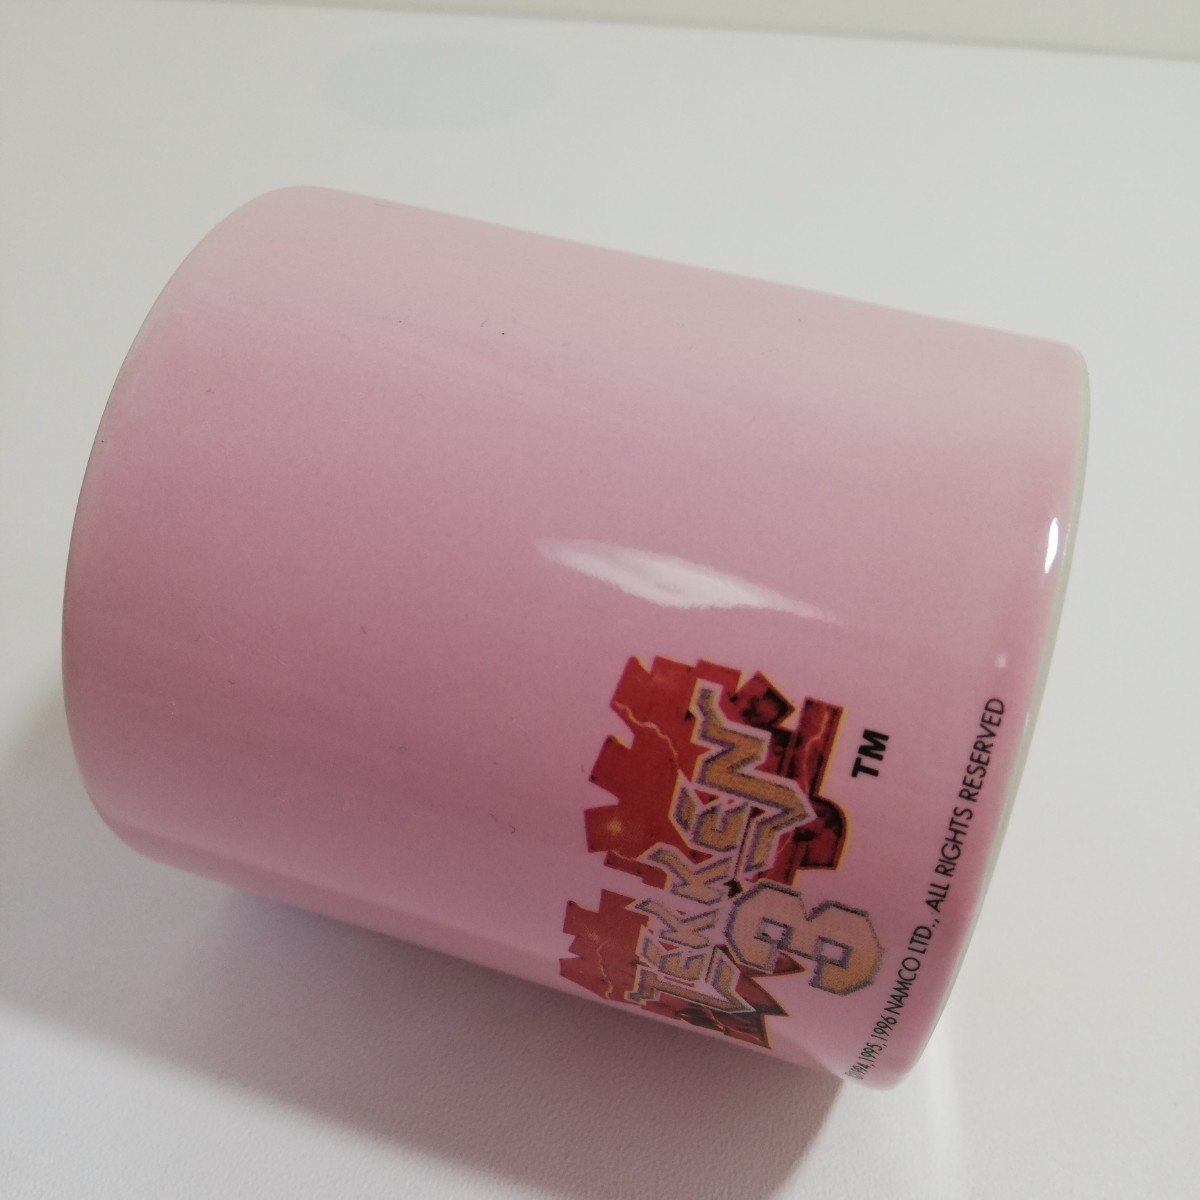 1996年 namco ナムコ 鉄拳3 マグカップ ピンク 口径7.6cm×高さ7.9cm [茶器 ゲームグッズ キャラクター マグ]_画像6